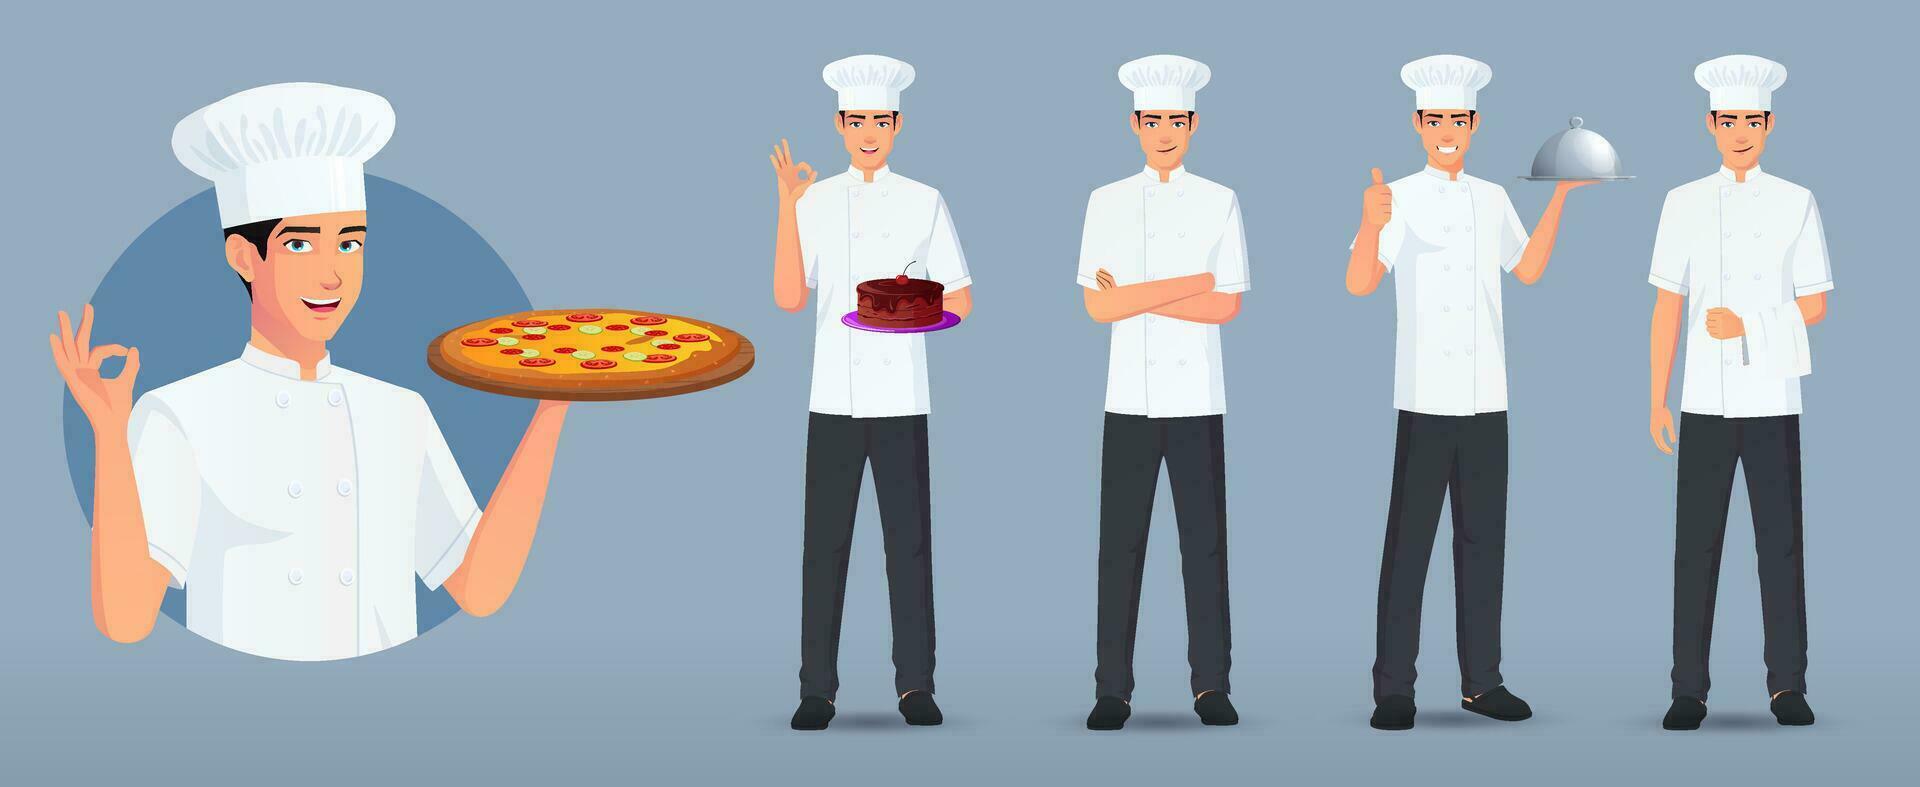 kock logotyp och laga mat karaktär uppsättning i olika poser och gester, kock stående bärande kaka, pizza, tjänande tallrik, vapen vikta vektor